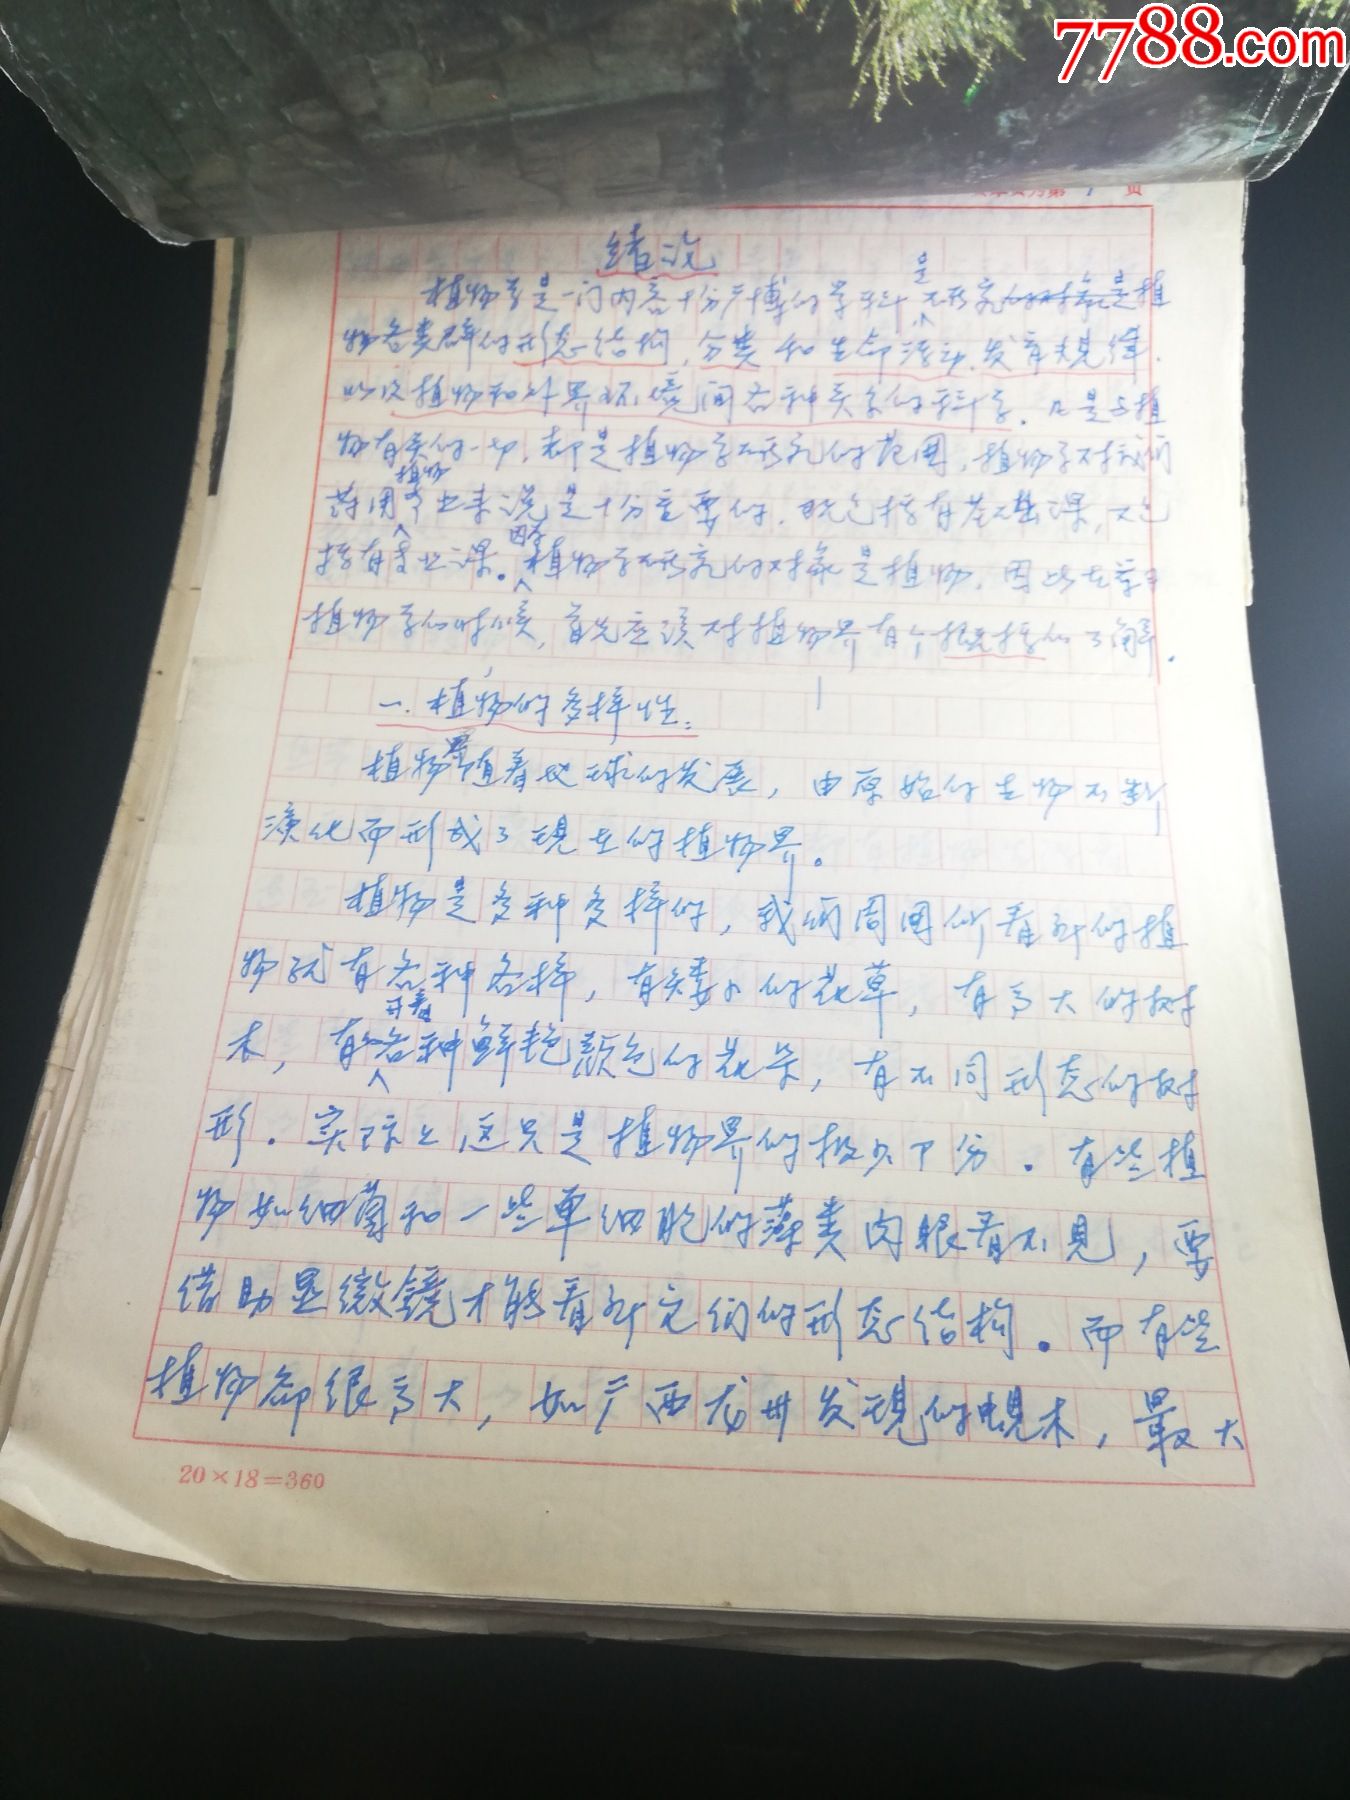 名人手稿:西北大学著名植物学教授侯景贞教授科研成果珍贵手稿,完整一